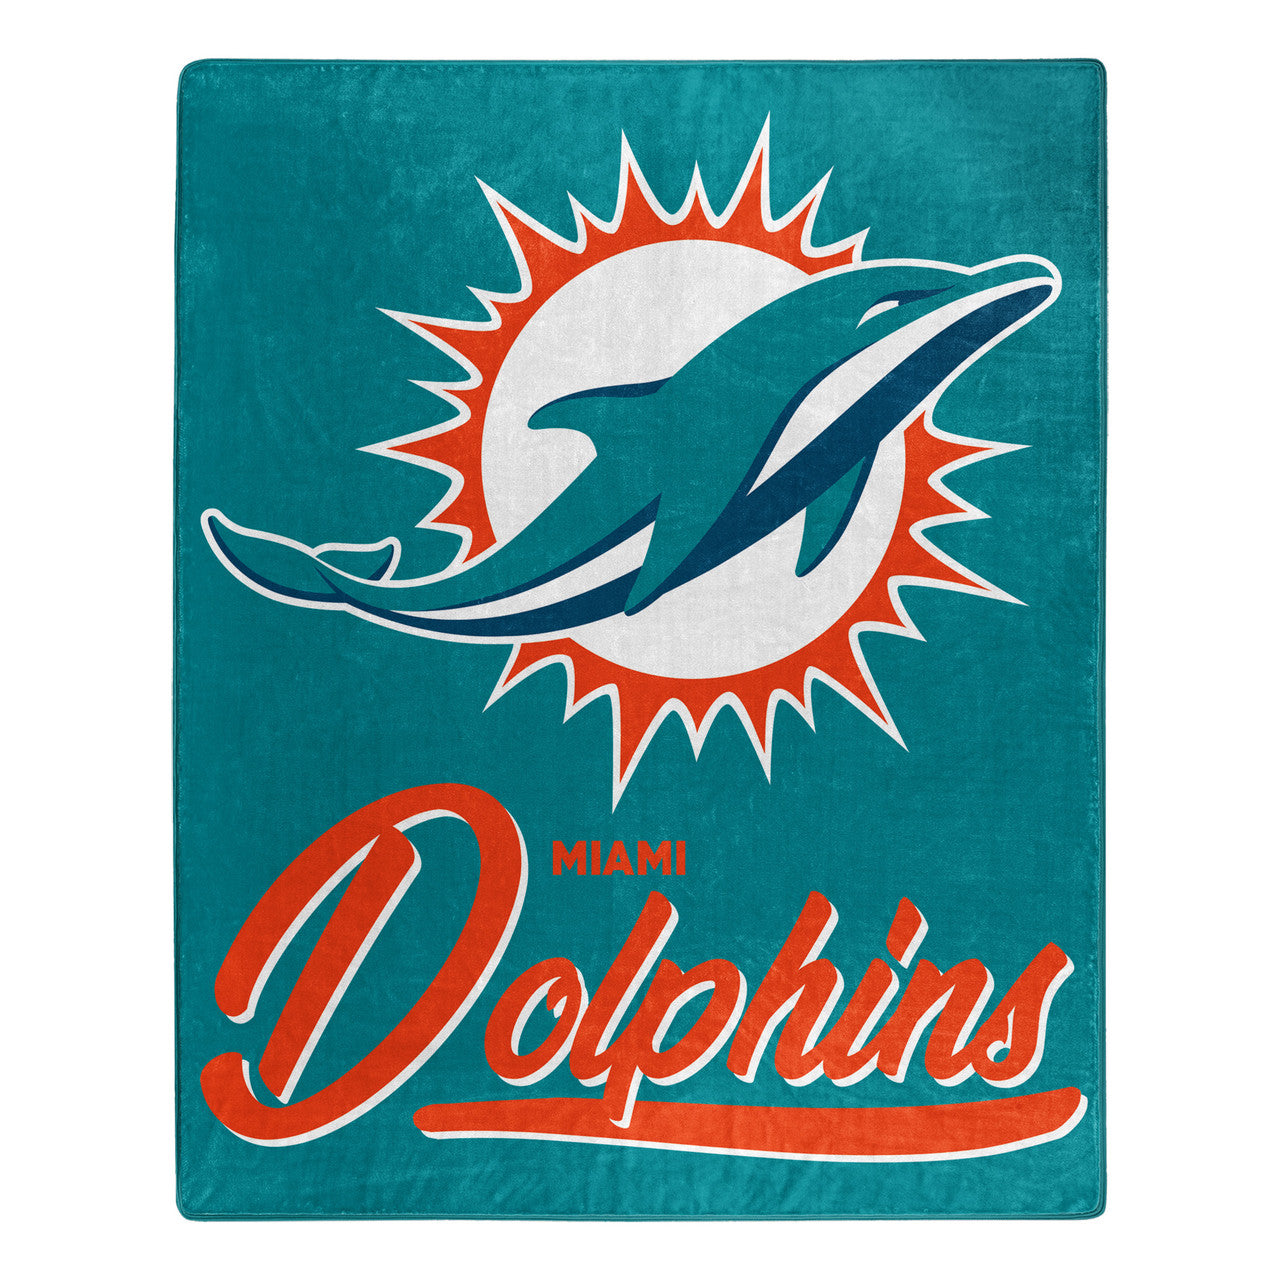 Miami Dolphins 50" x 60" Signature Design Raschel Blanket by Northwest